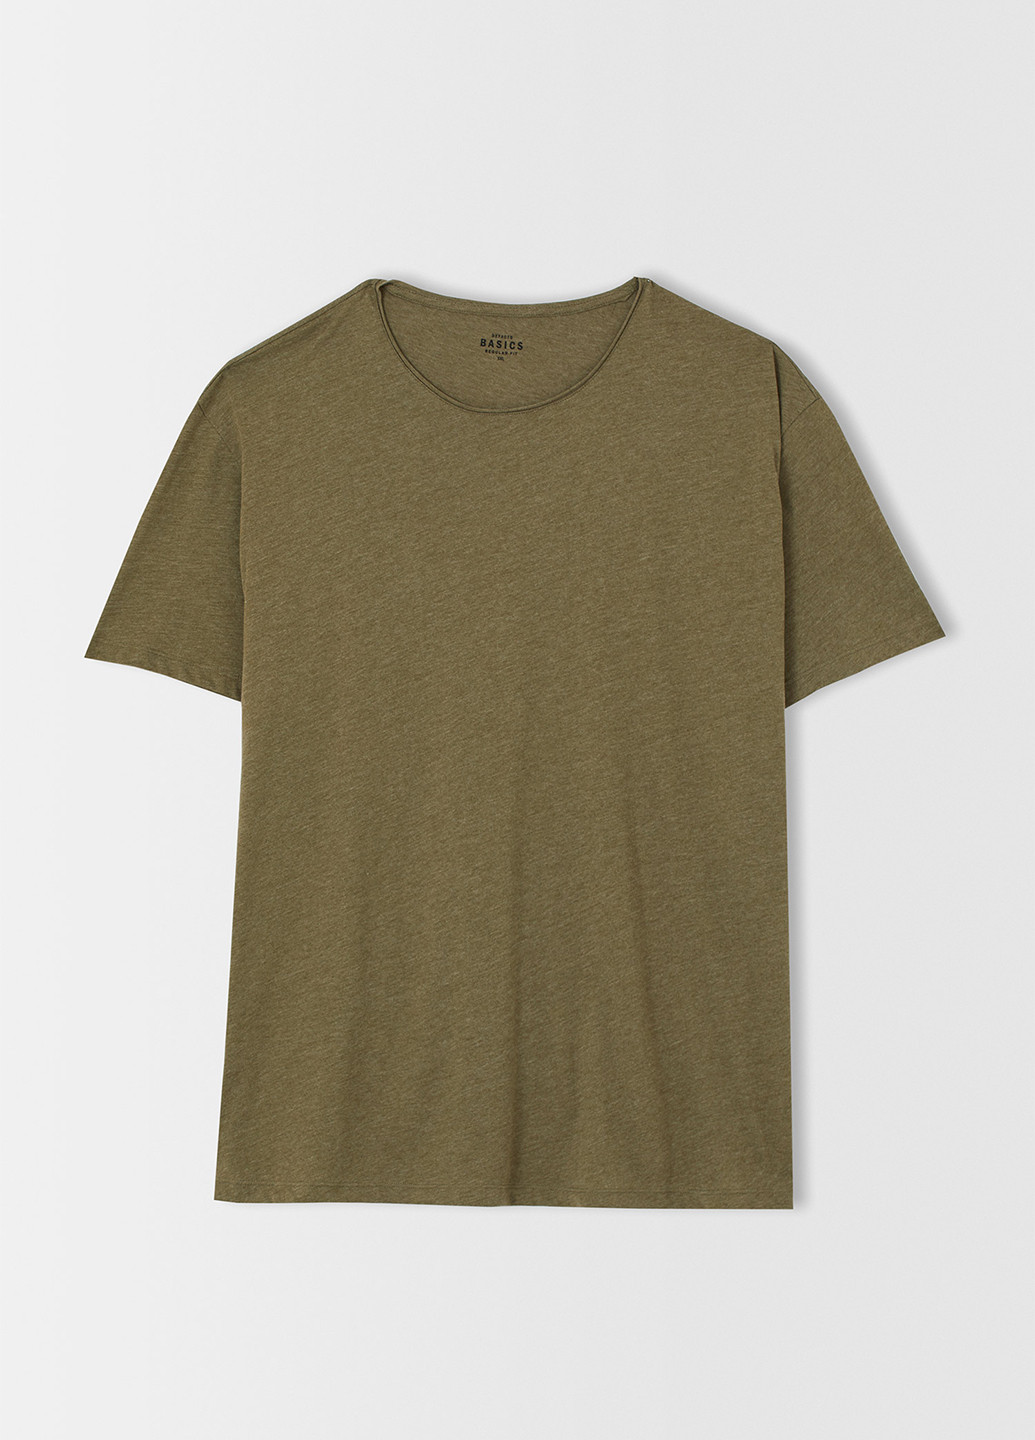 Хаки (оливковая) футболка DeFacto